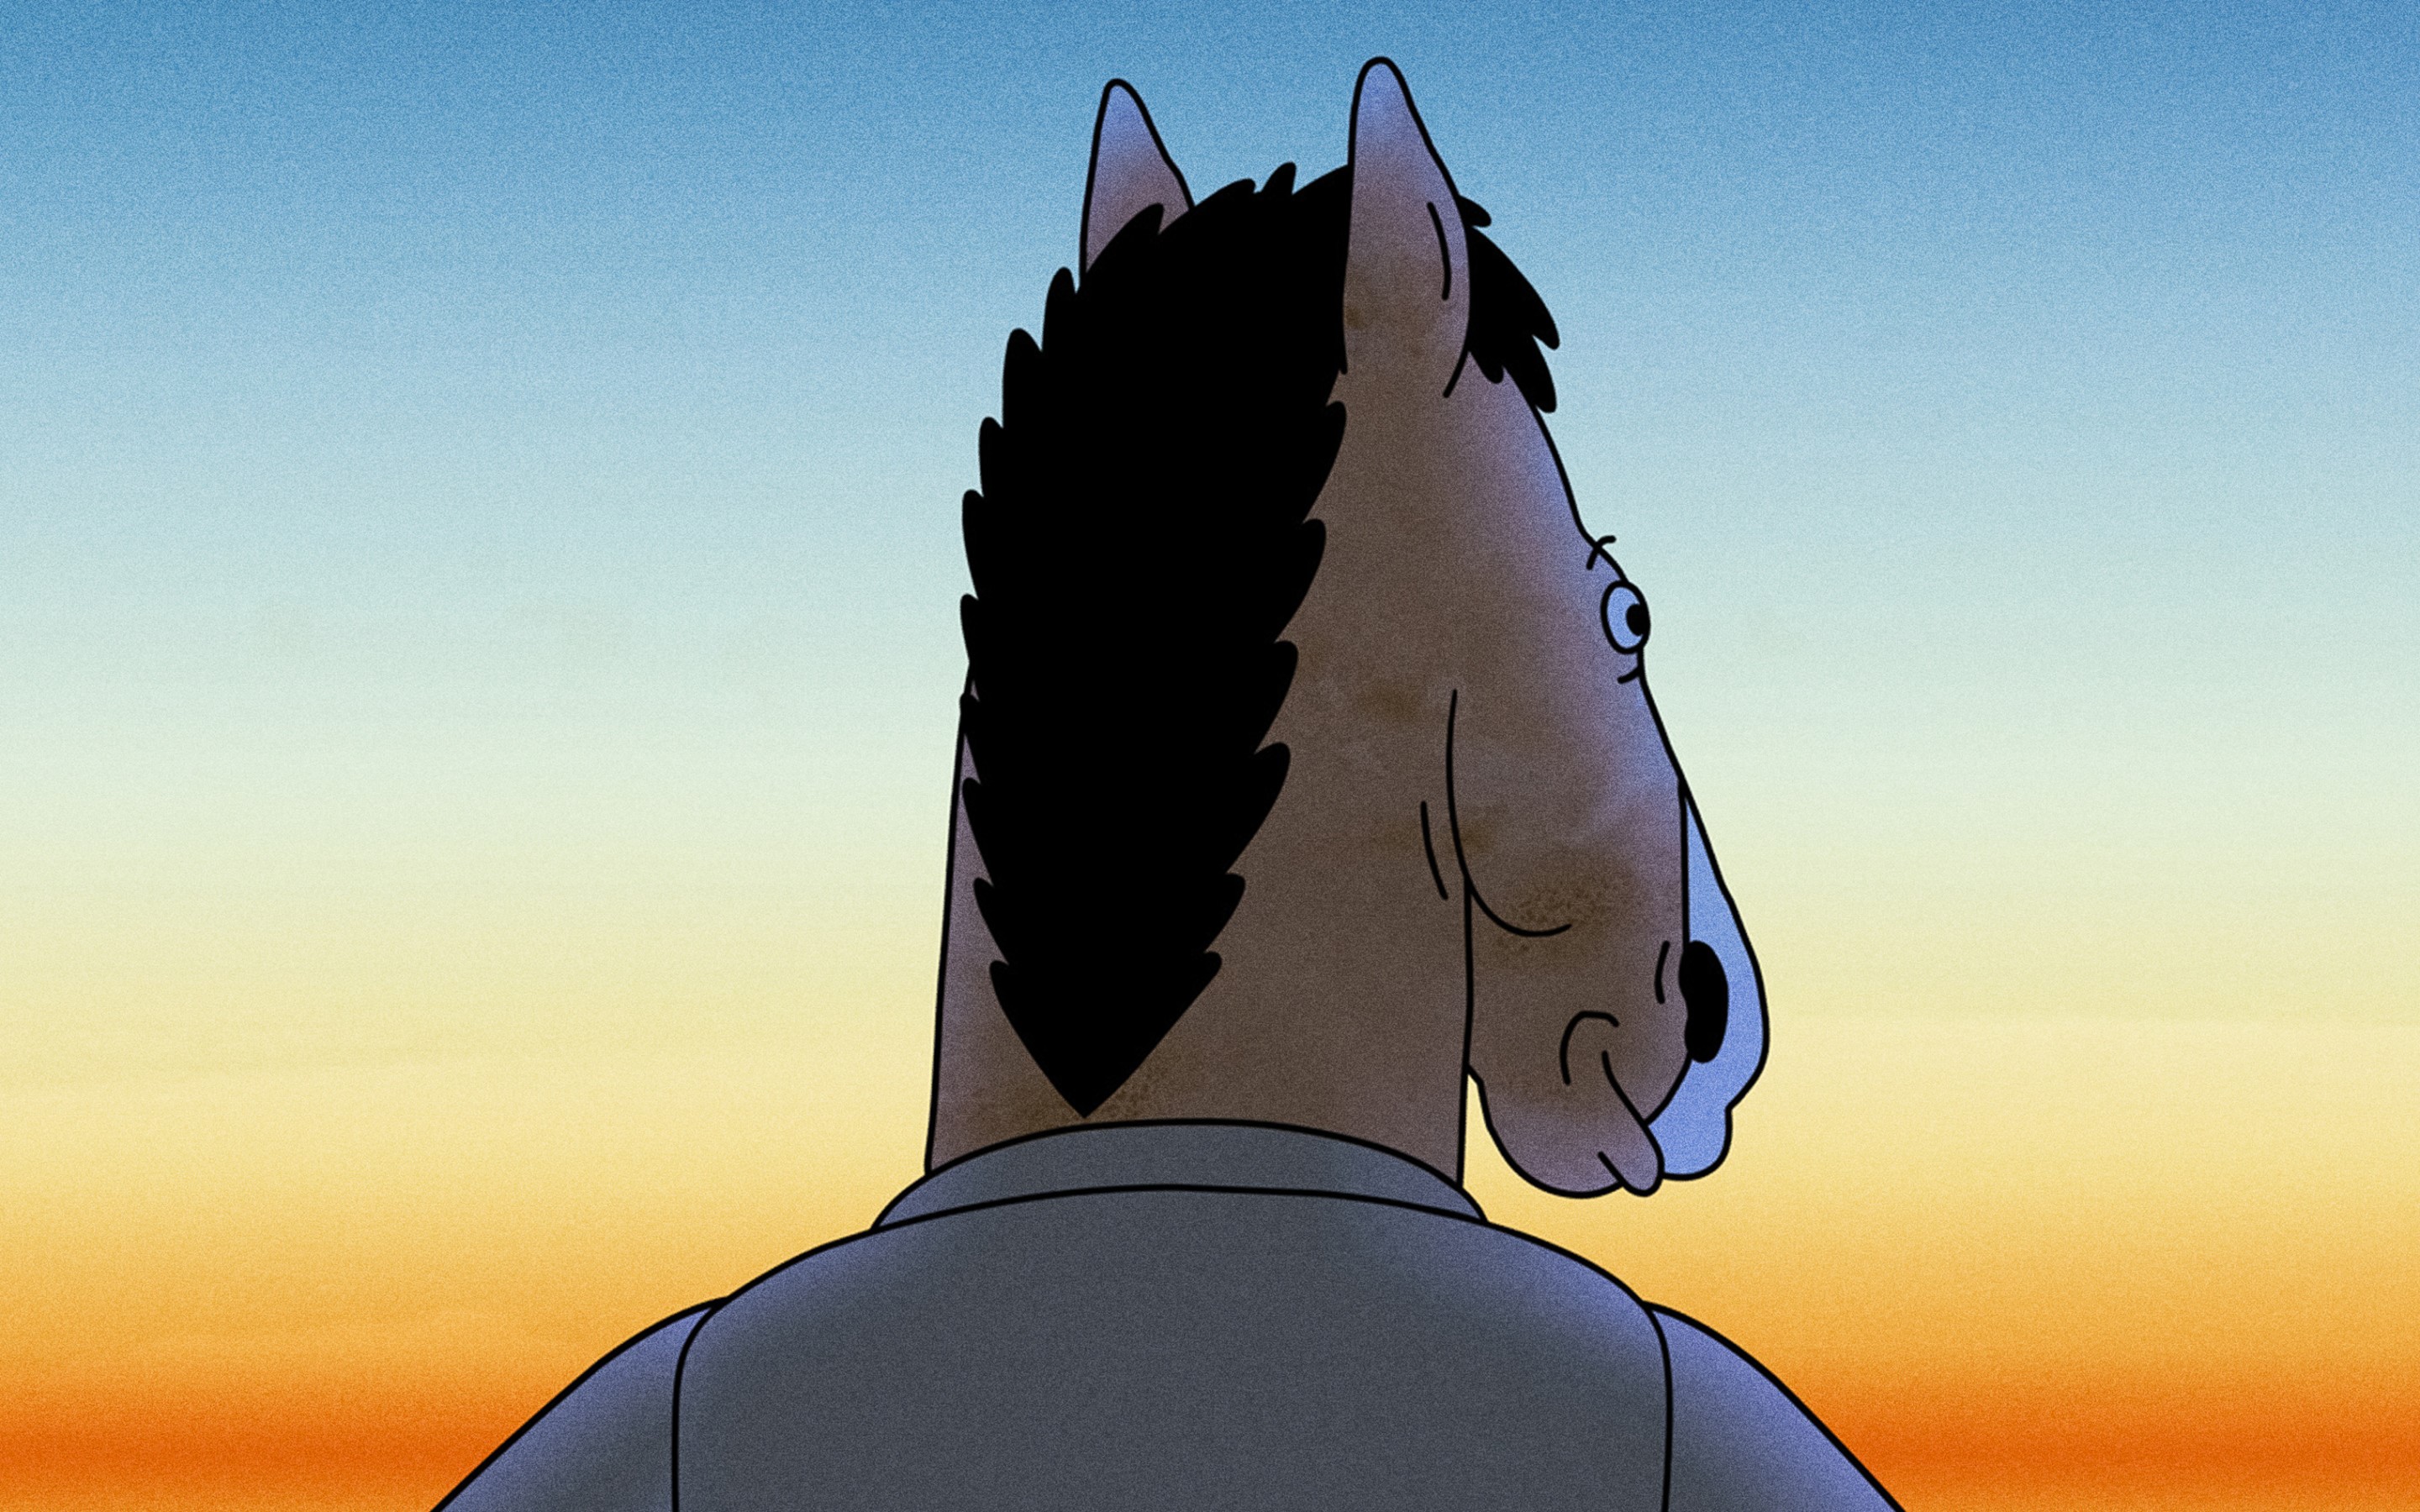 bojack-horseman-season-6-poster-v2-2880x1800.jpg